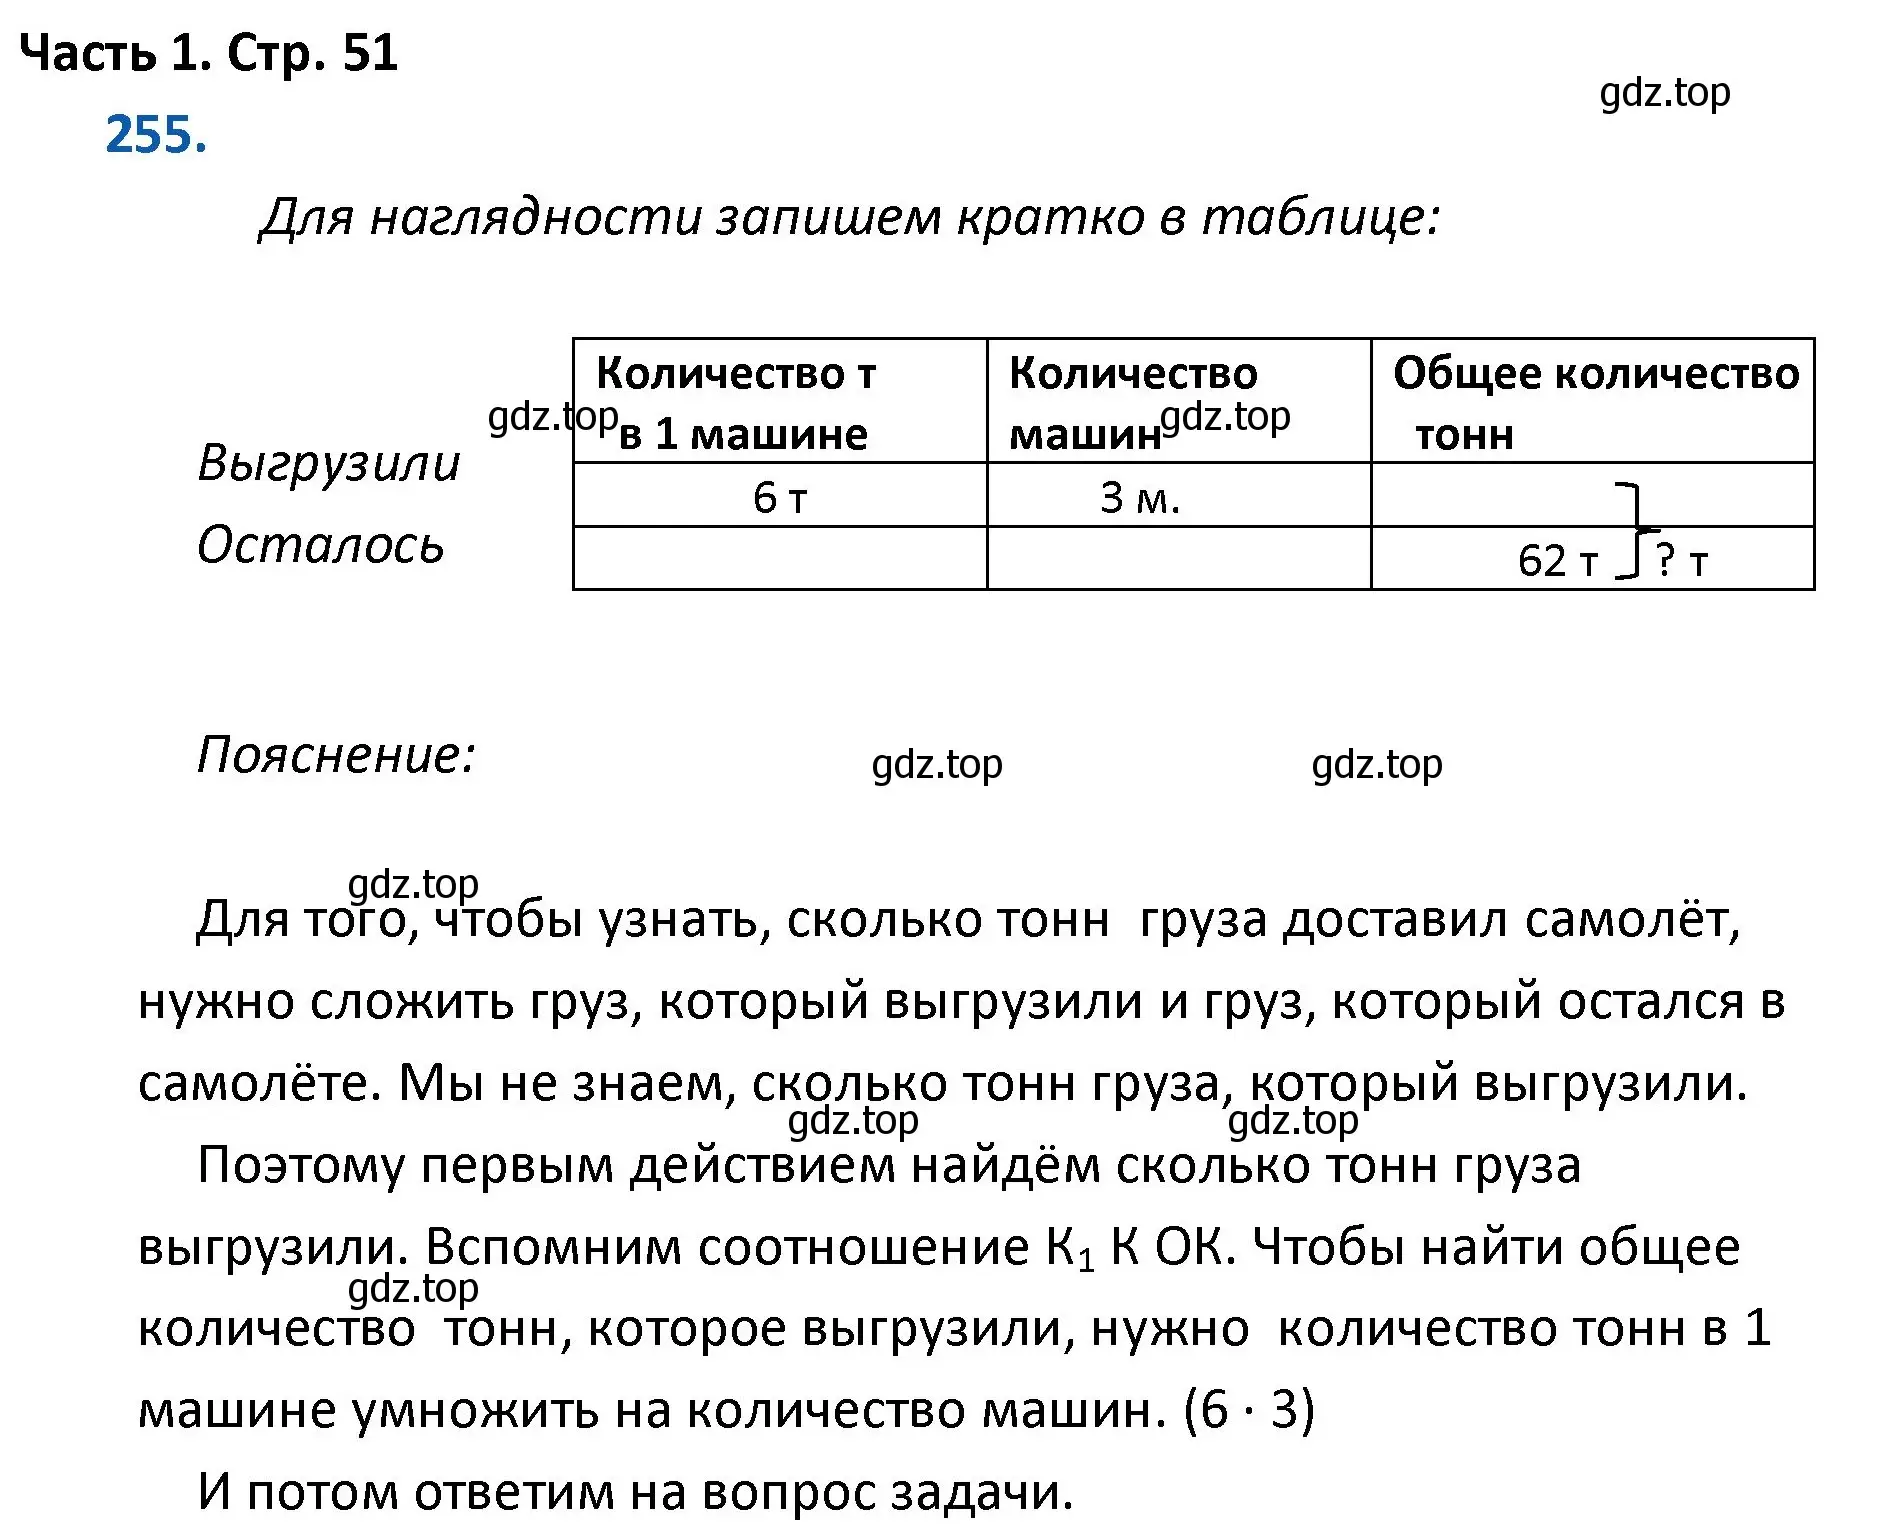 Решение номер 255 (страница 51) гдз по математике 4 класс Моро, Бантова, учебник 1 часть